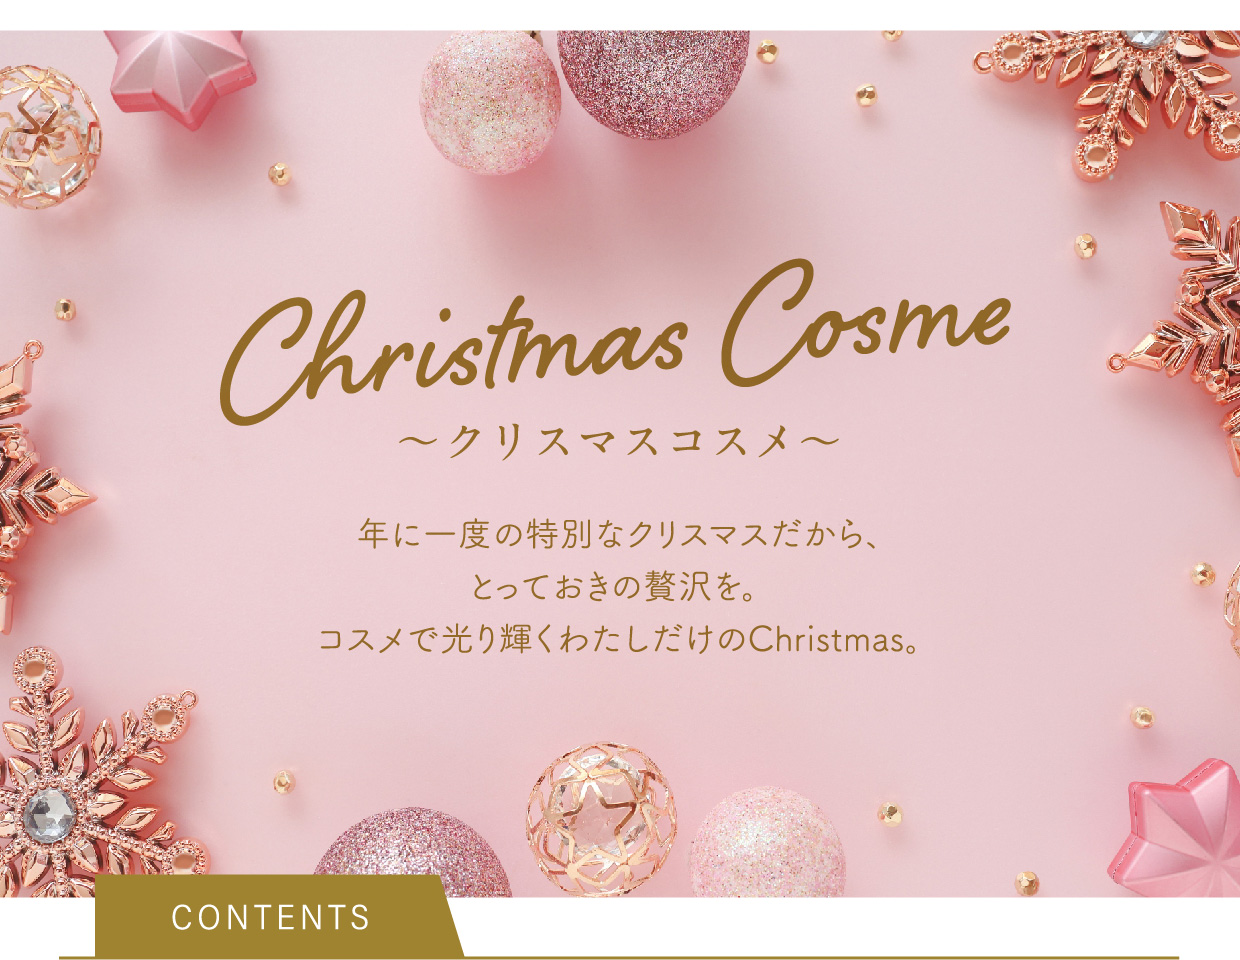 〜クリスマスコスメ〜 Christmas Cosme